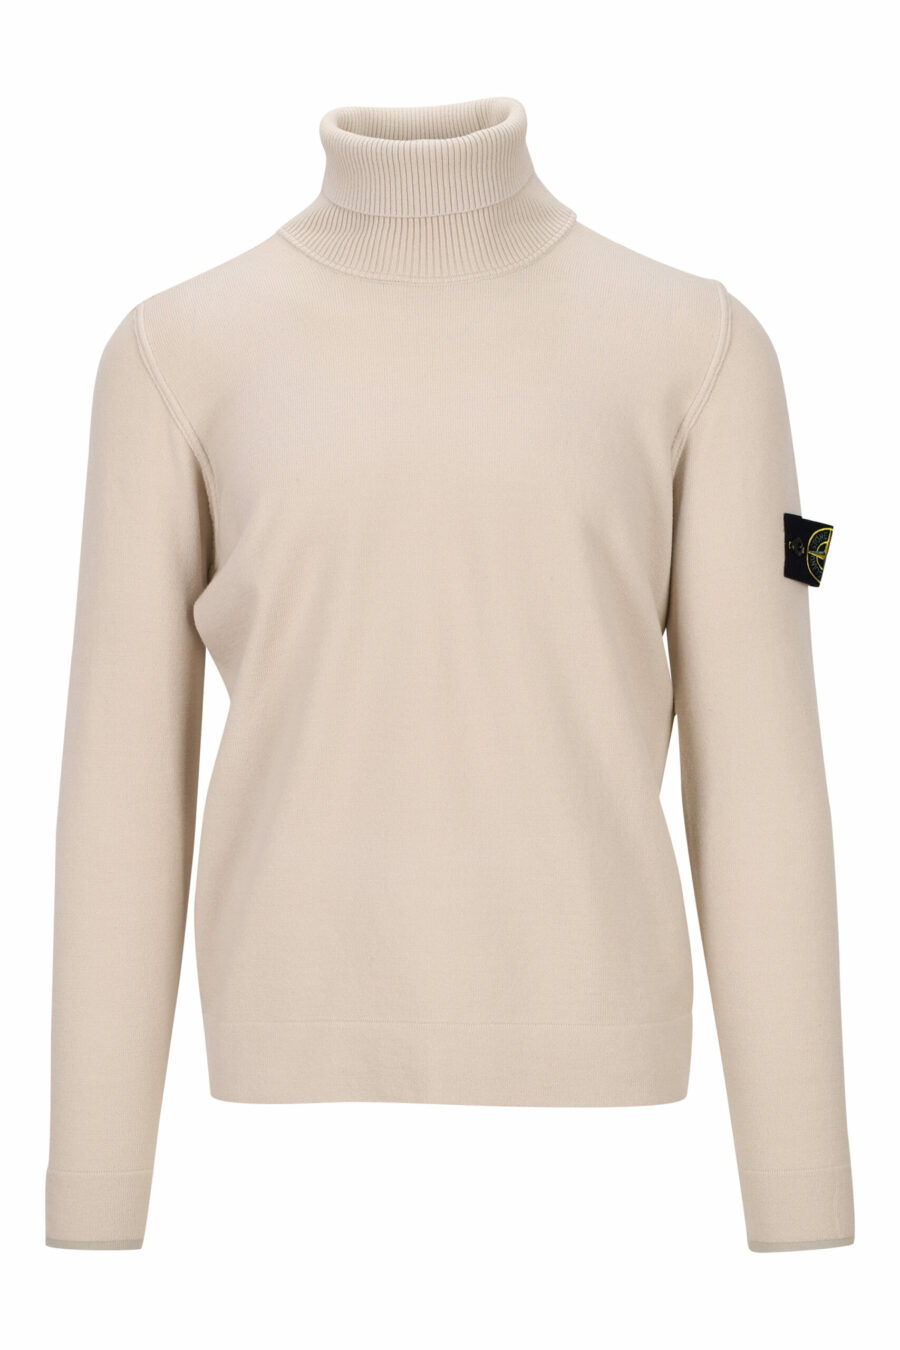 Beigefarbenes Sweatshirt mit hohem Kragen und seitlichem Logoaufnäher - 8052572740954 skaliert